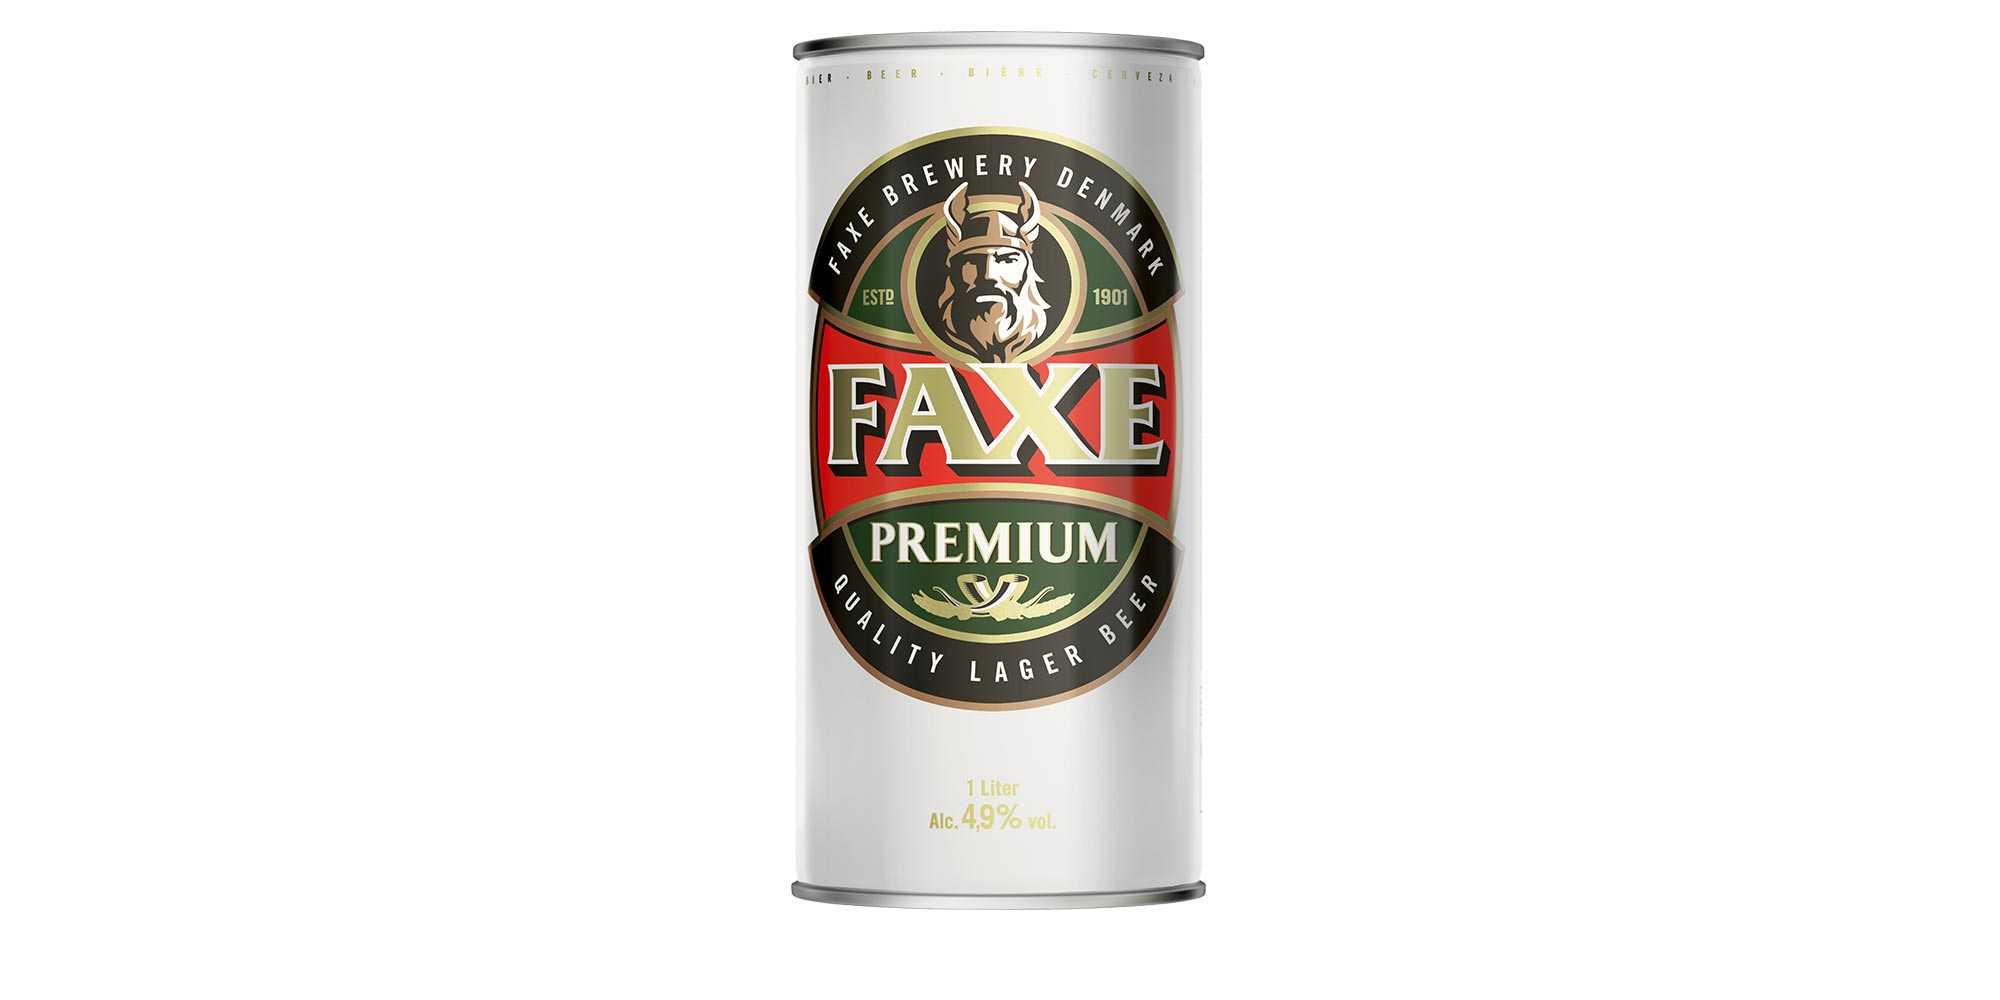 Beer 1.20 1. Пиво факс премиум светлое жб 0,9. Пиво faxe Premium светлое 4.9. Пиво faxe Premium светлое жб. Пиво faxe Premium 0.9.